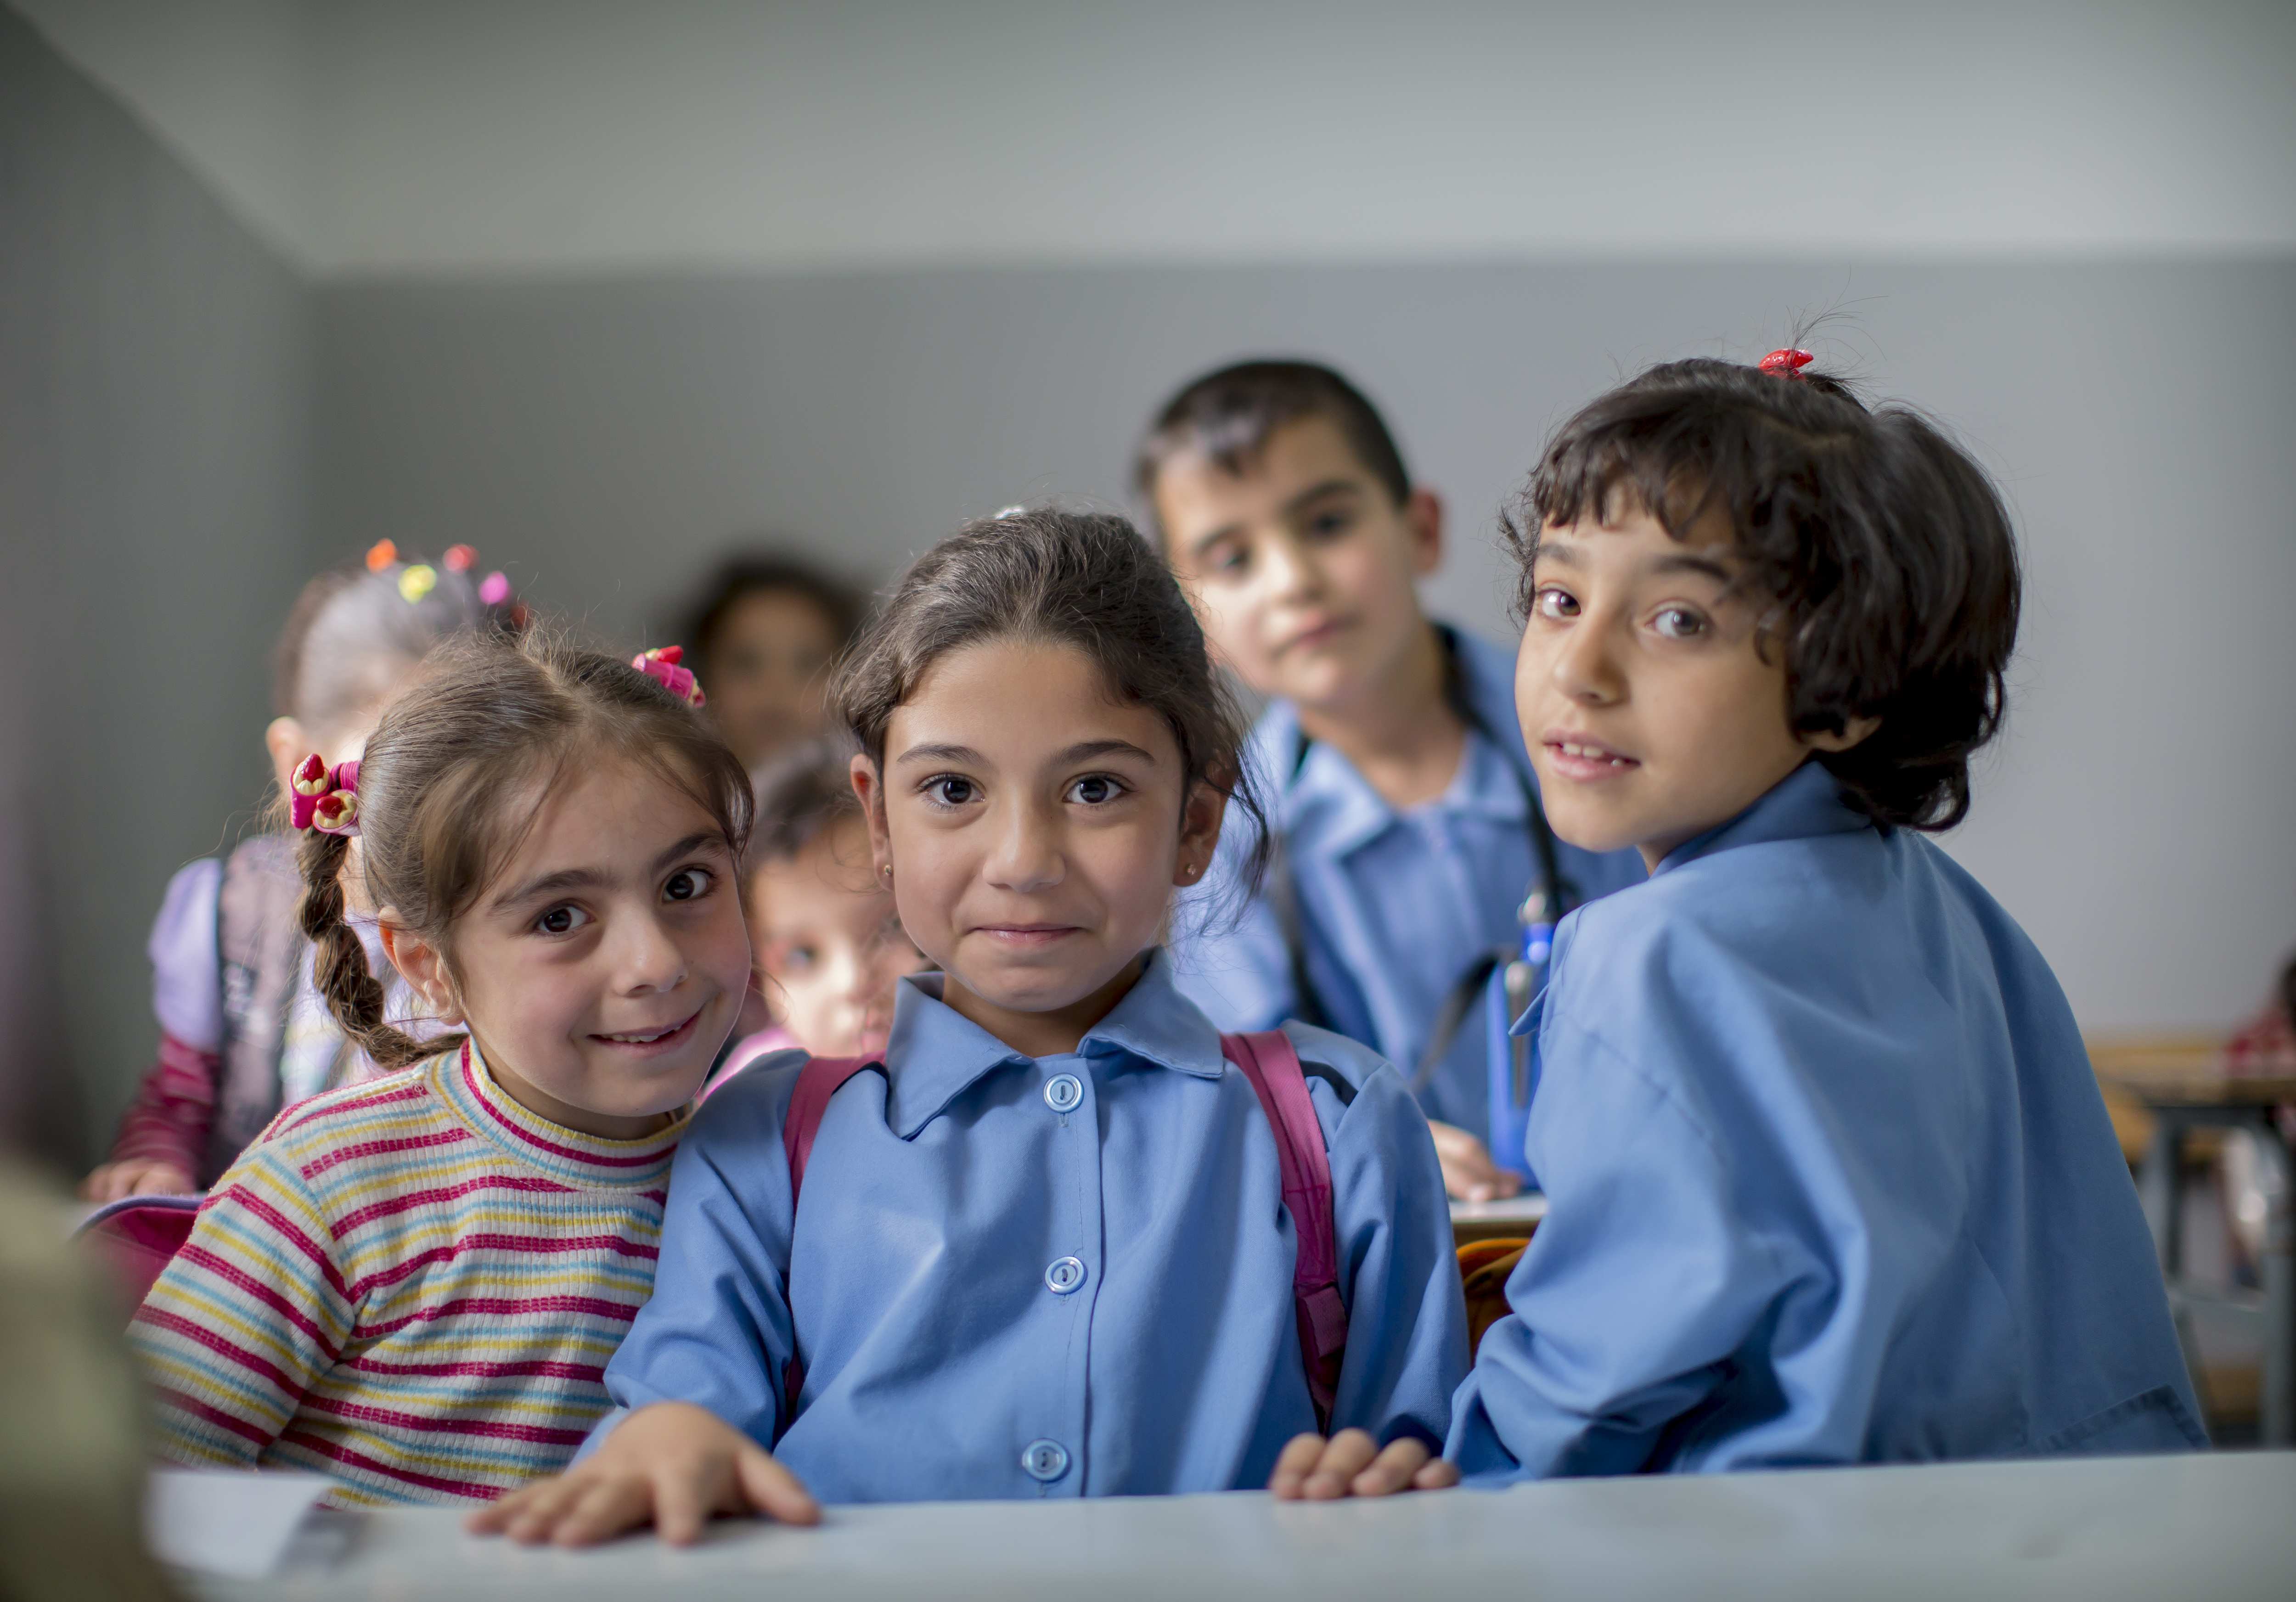 Besuch von Flüchtlingskindern in einer Schule. Kinder lächeln in die Kamera (Quelle: Jakob Studnar)